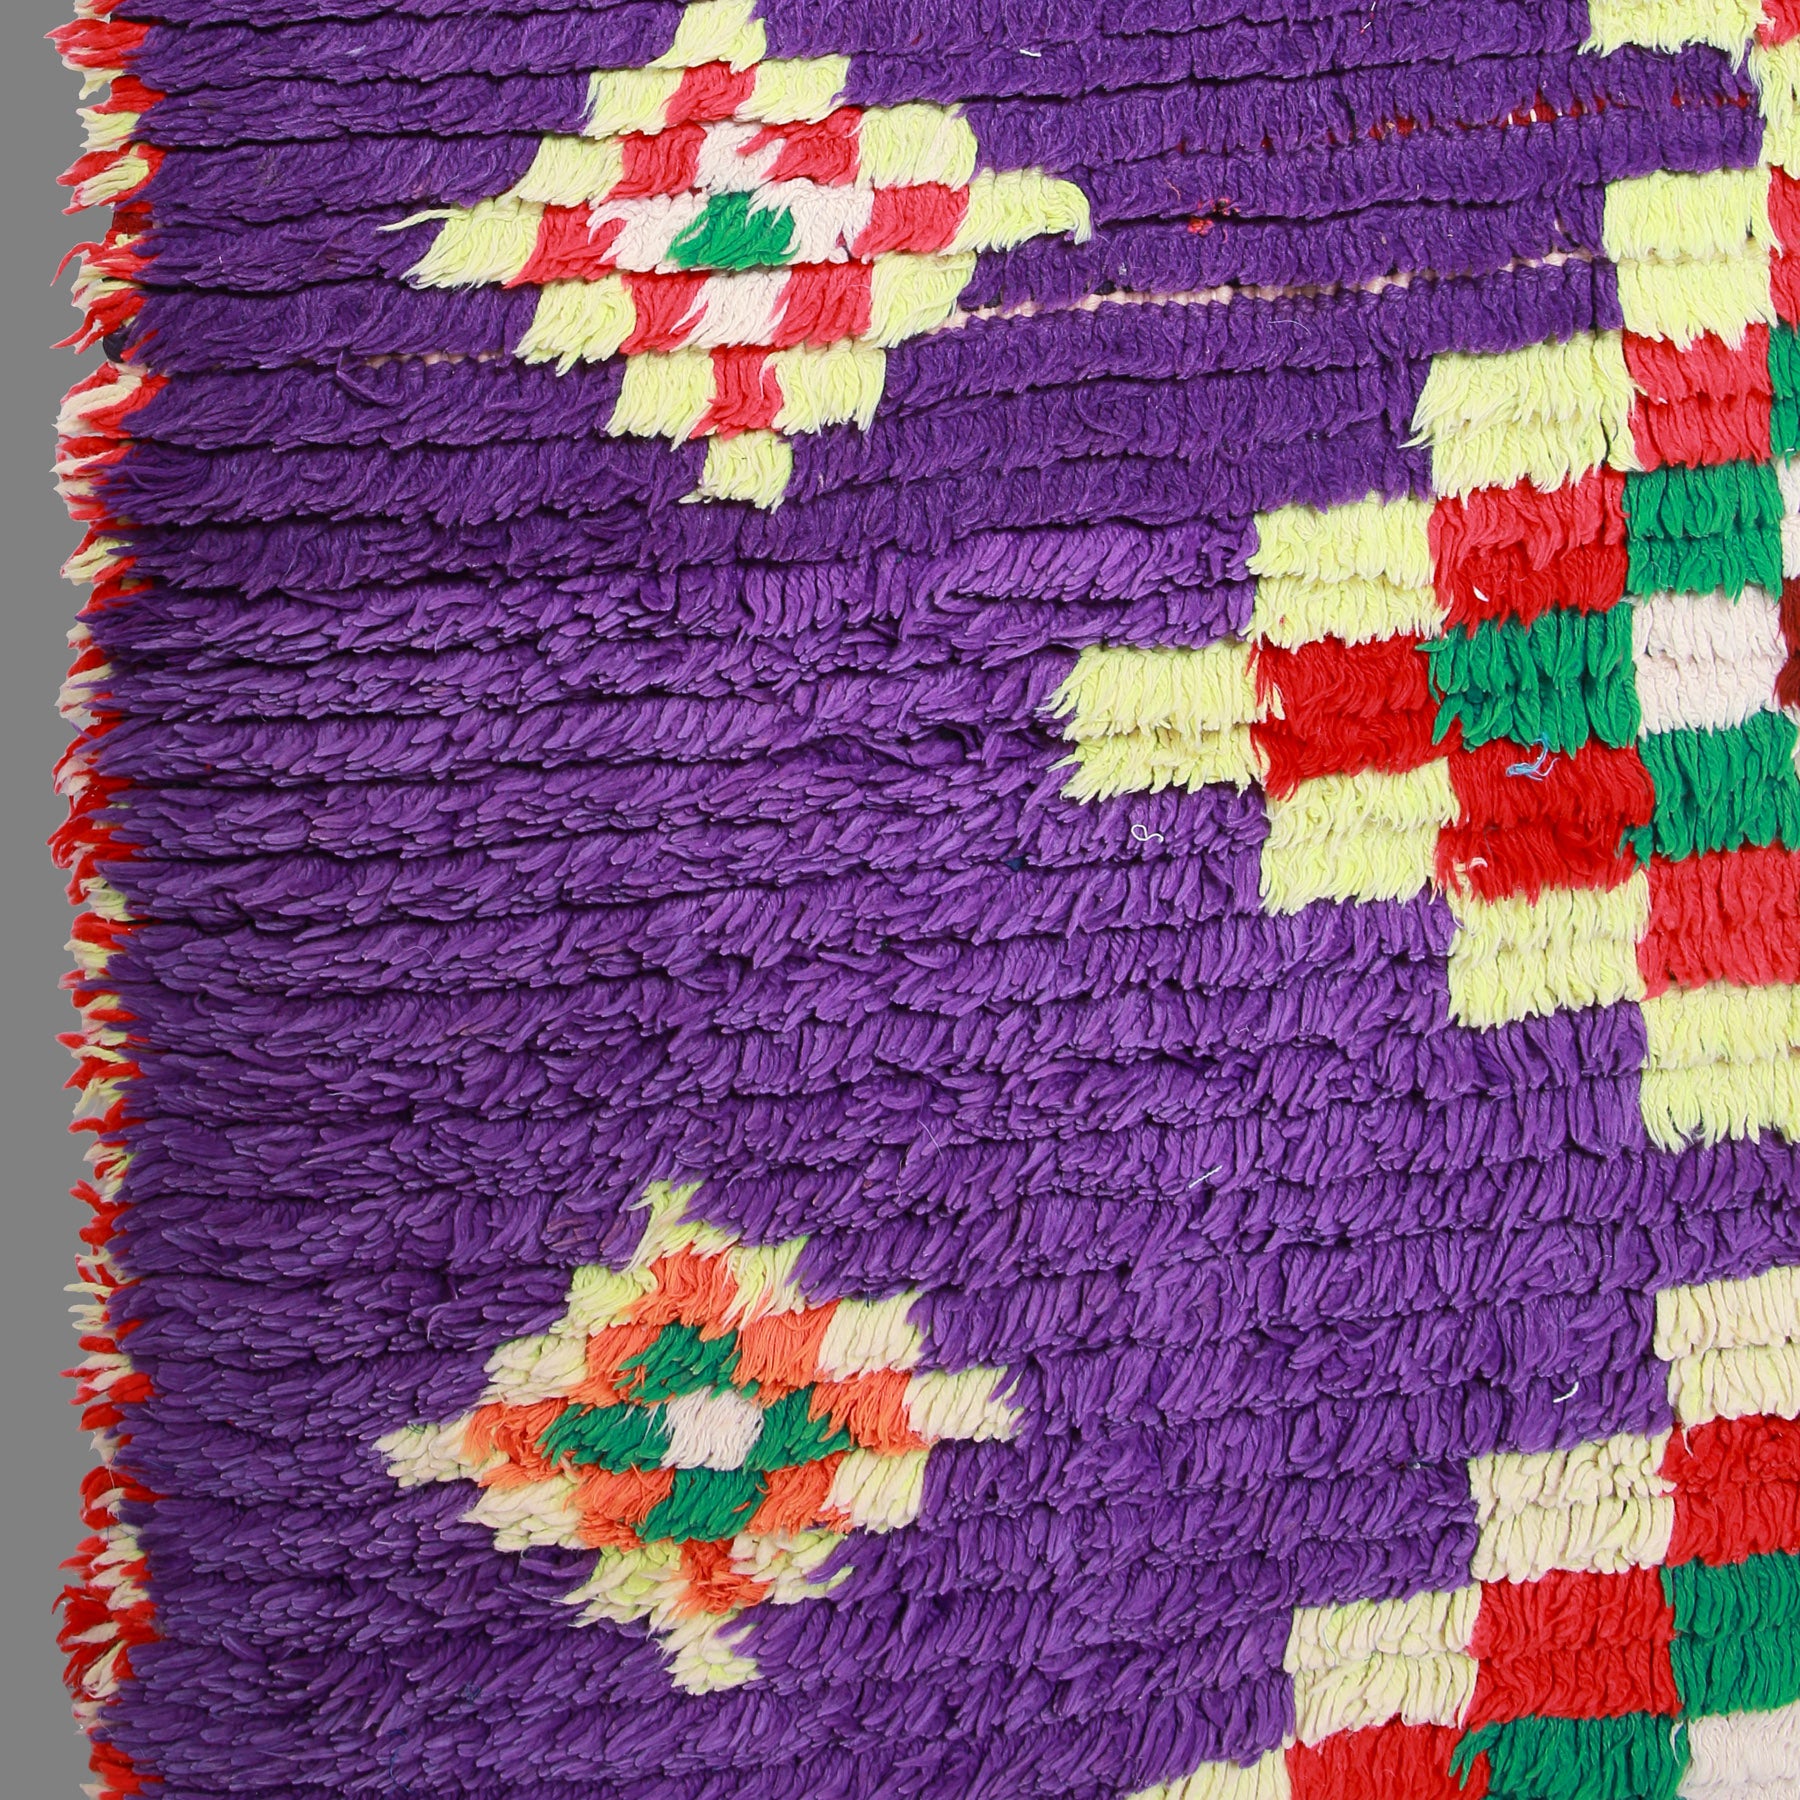 dettaglio della lana viola intrecciata e dei rombi anchessi di lana annodata di un tappeto vintage